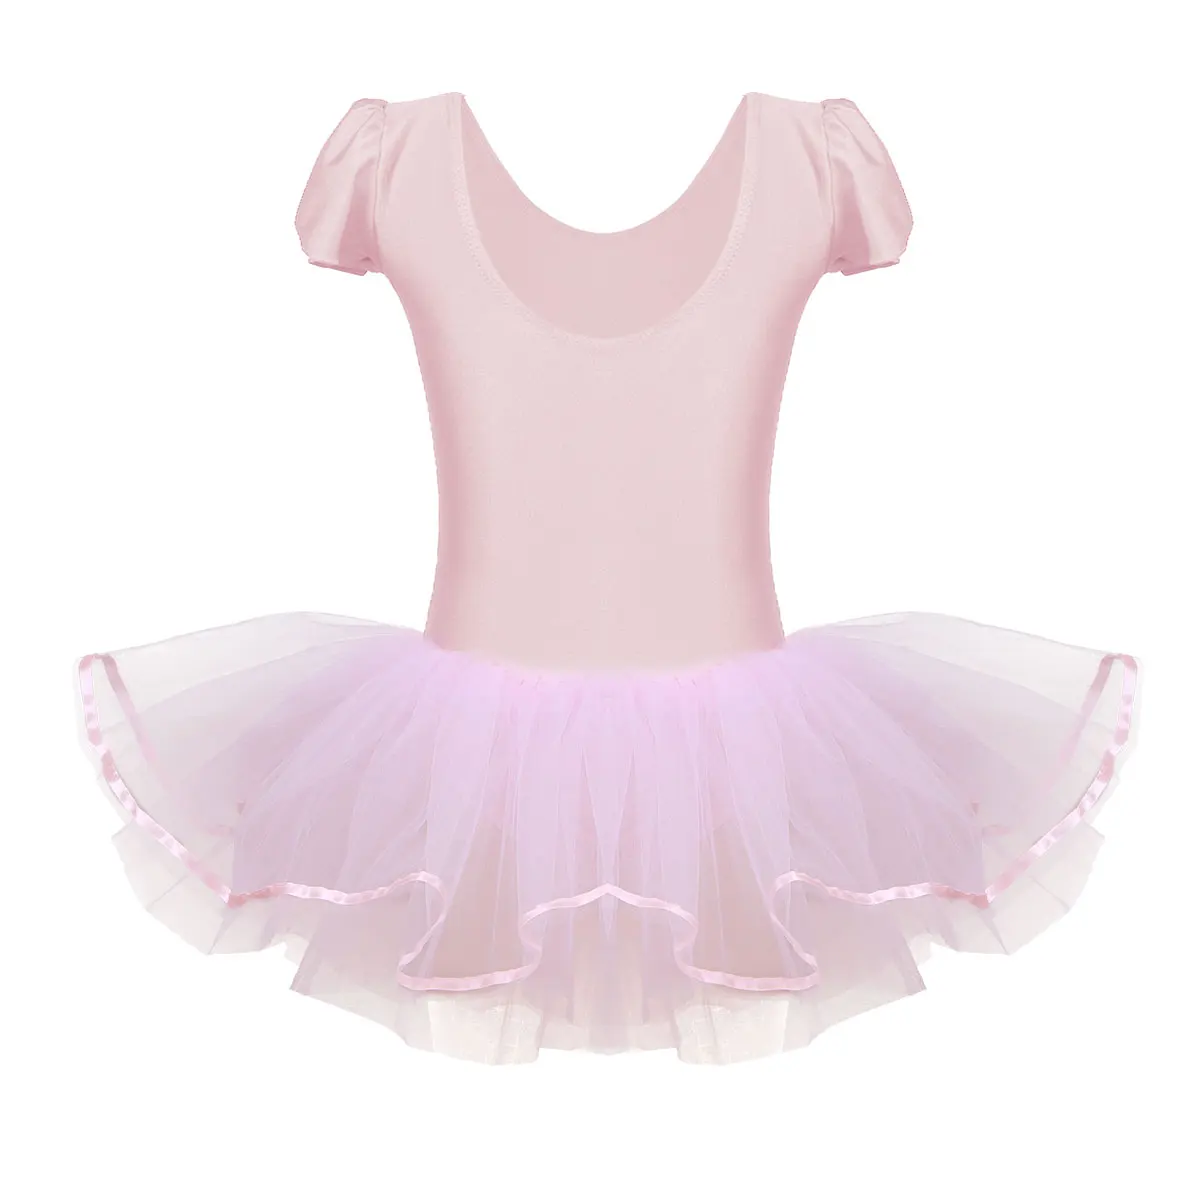 Iefiel для детей с рюшами для девочек; Кепки рукава Профессиональный Одежда для танцев с блестками обувь для балерин балетная танцевальная одежда для занятий гимнастикой, платье-пачка